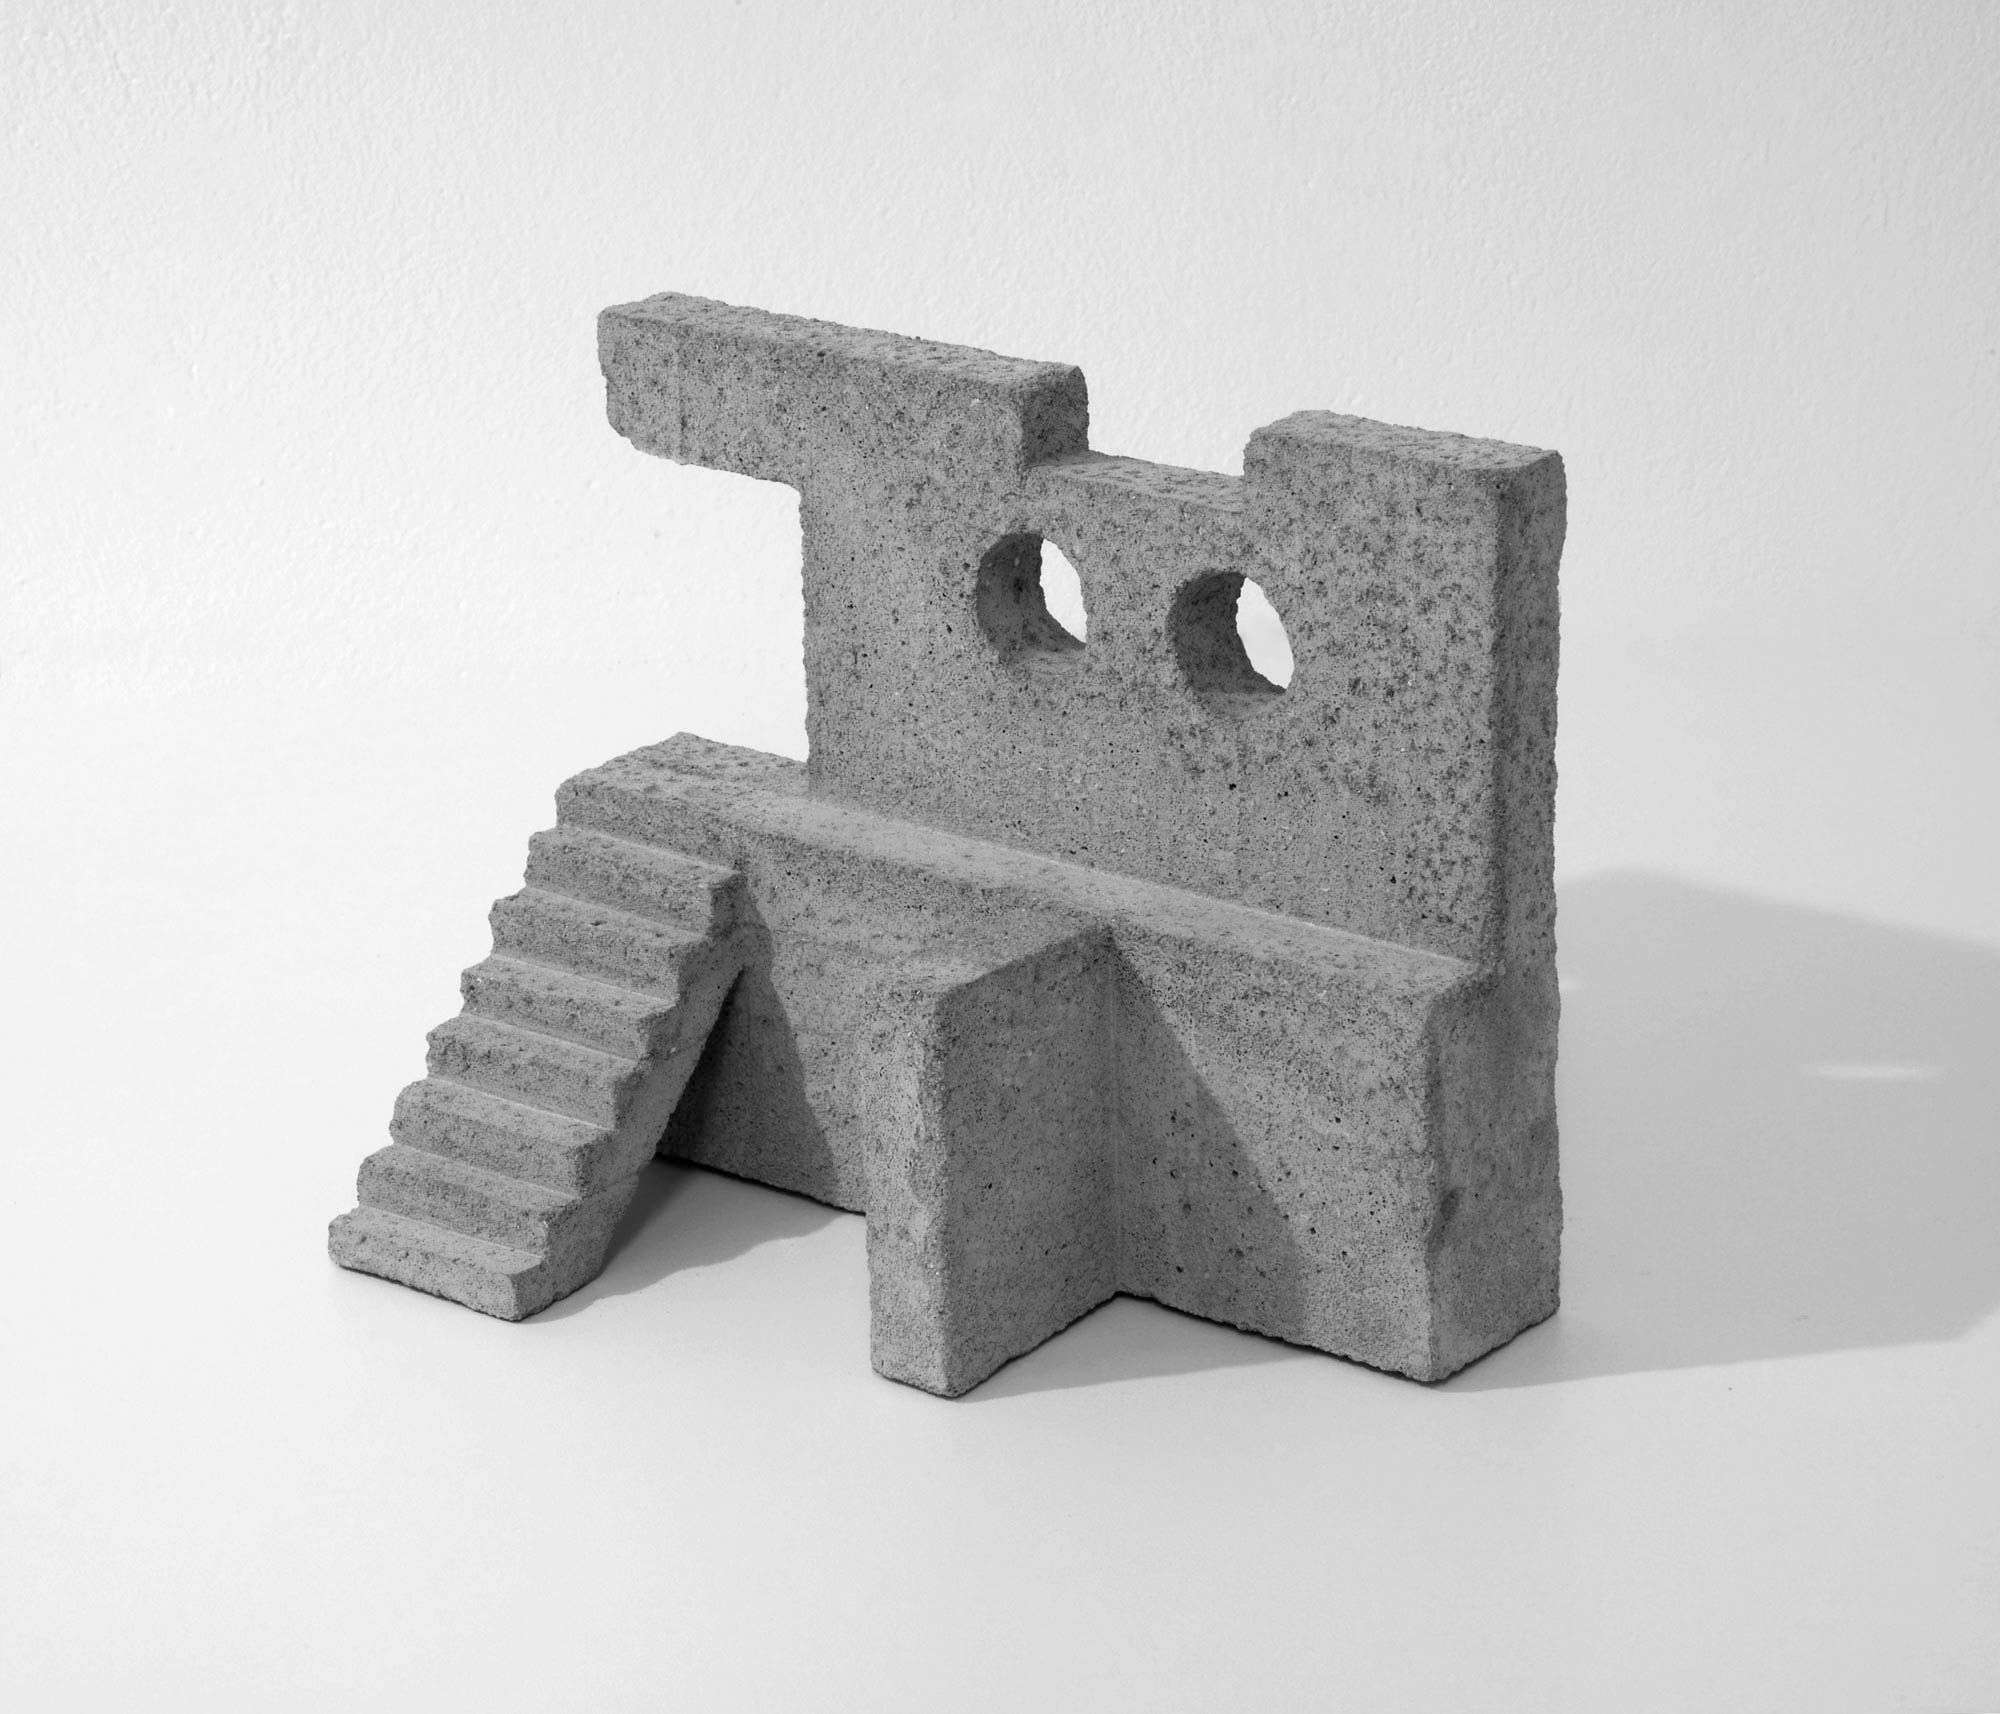 mattia listowski art design objet décoration sculpture béton moulage micro architecture maquette passage 3 édition limitée numérotée signée paris bruxelles 2019